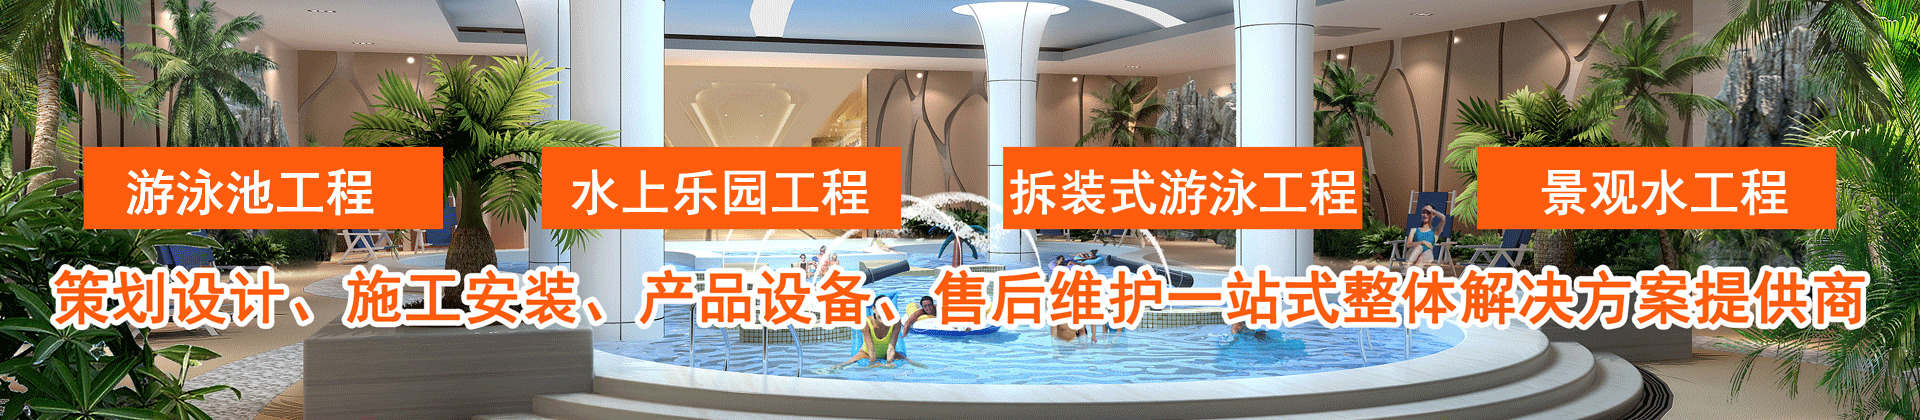 水处理设备专家-郑州泓道泳池设备